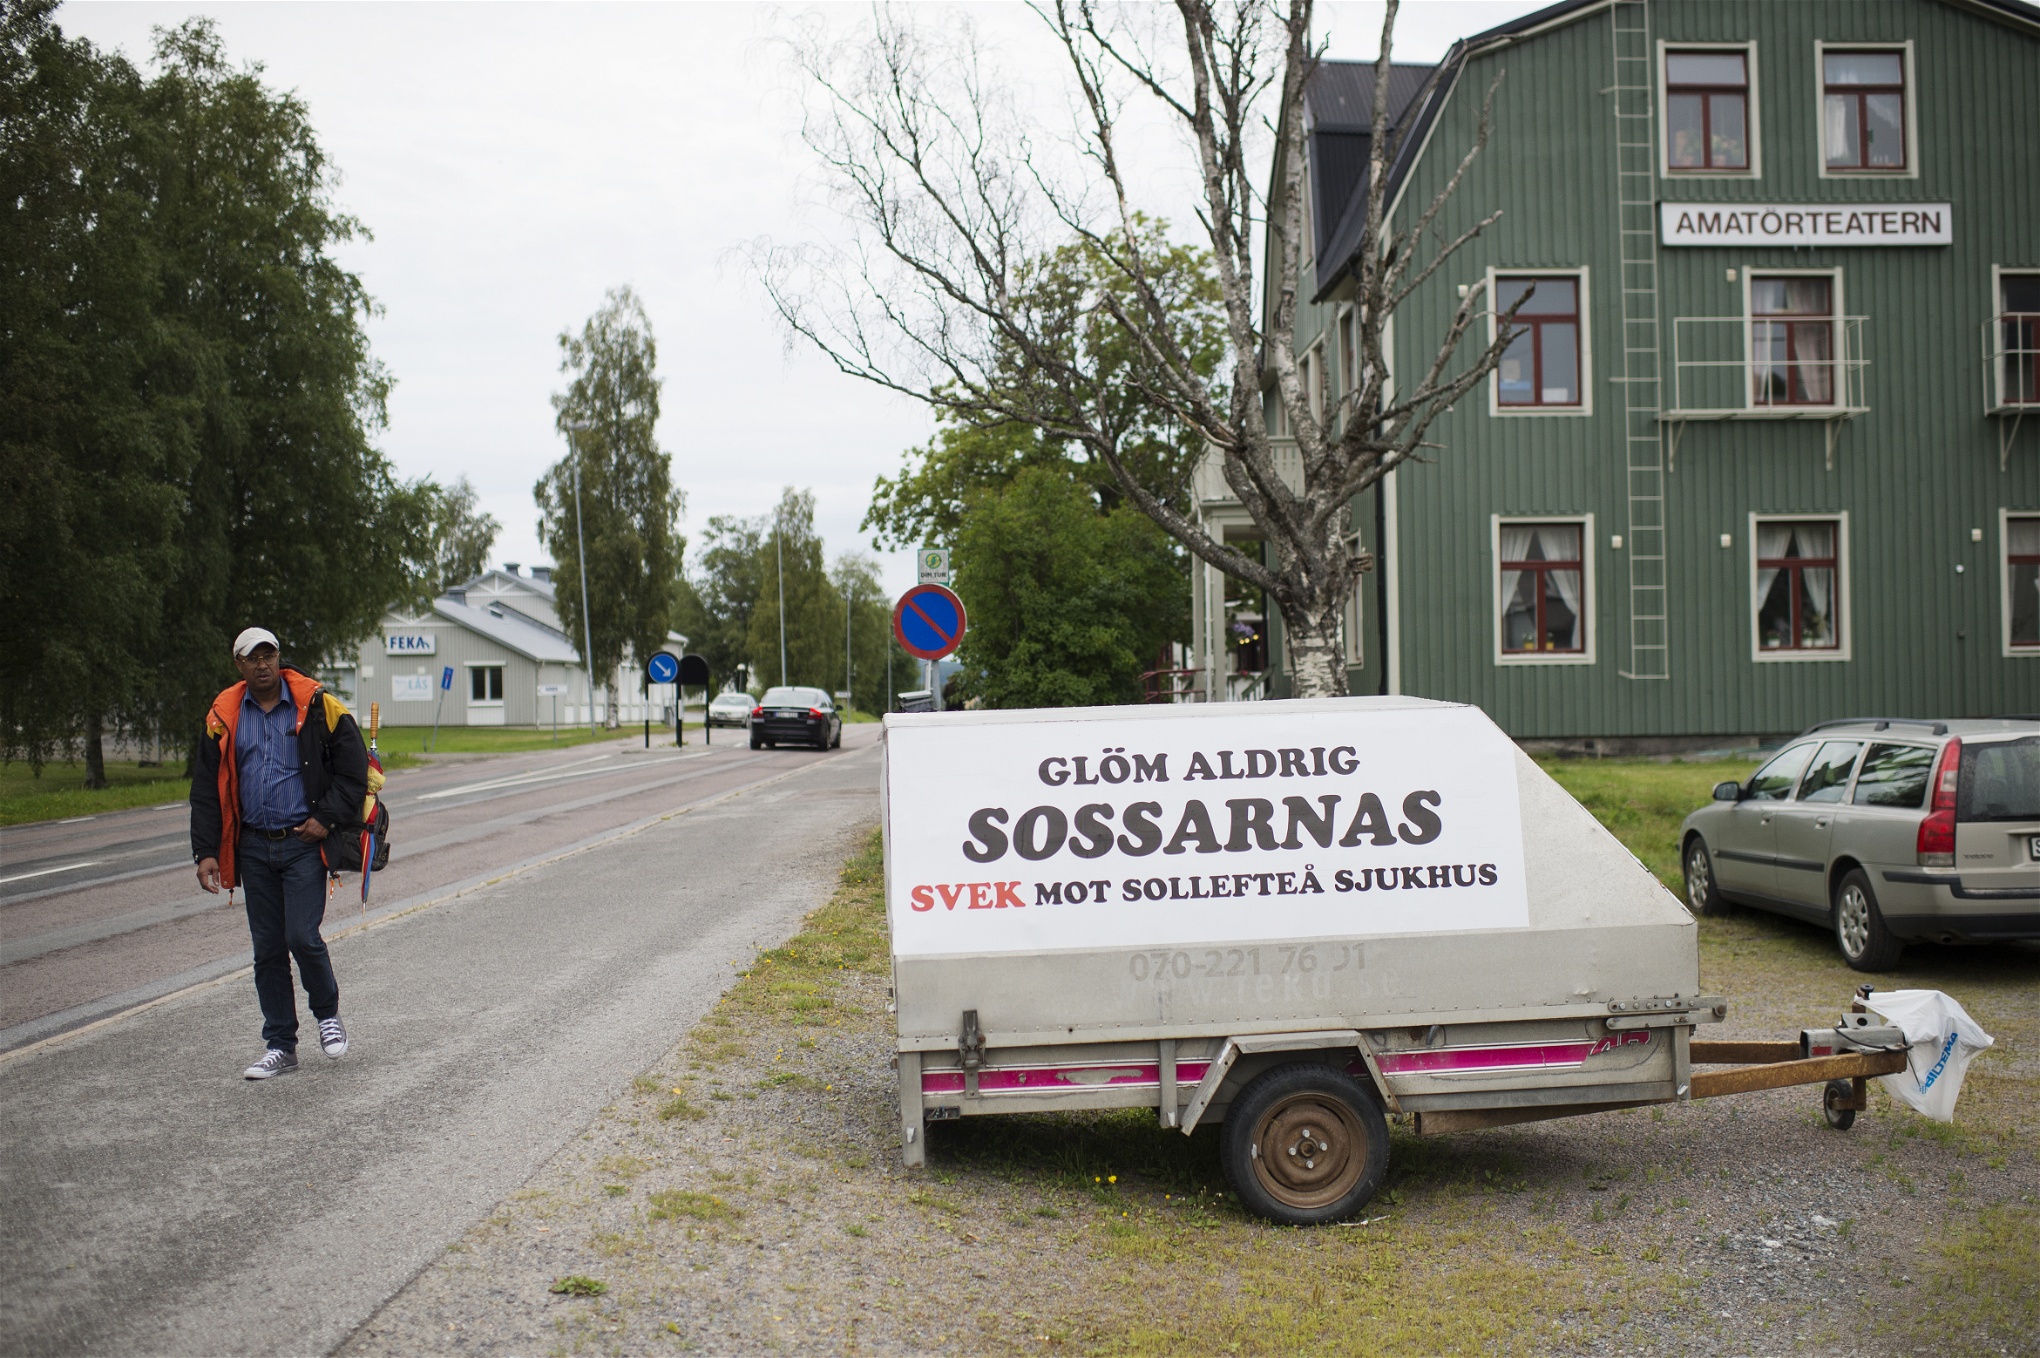 Foto: Izabelle NordfjellEn släpkärra med texten "Glöm aldrig sossarnas svek mot Sollefteå sjukhus"